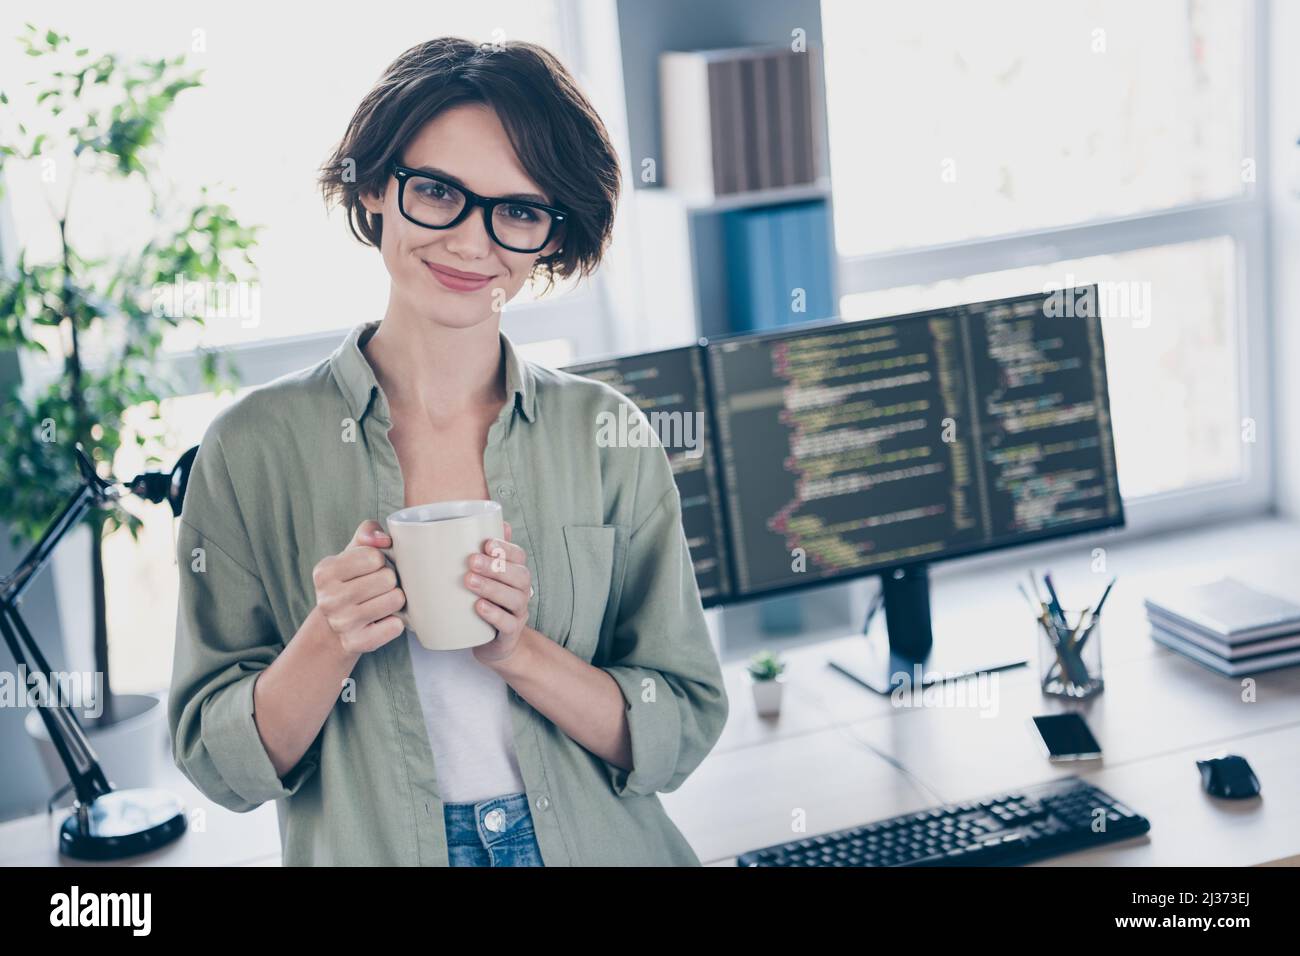 Ritratto di attraente sicuro cheery ragazza hacker supporto tecnico top manager senior bere caffè al posto di lavoro stazione al chiuso Foto Stock